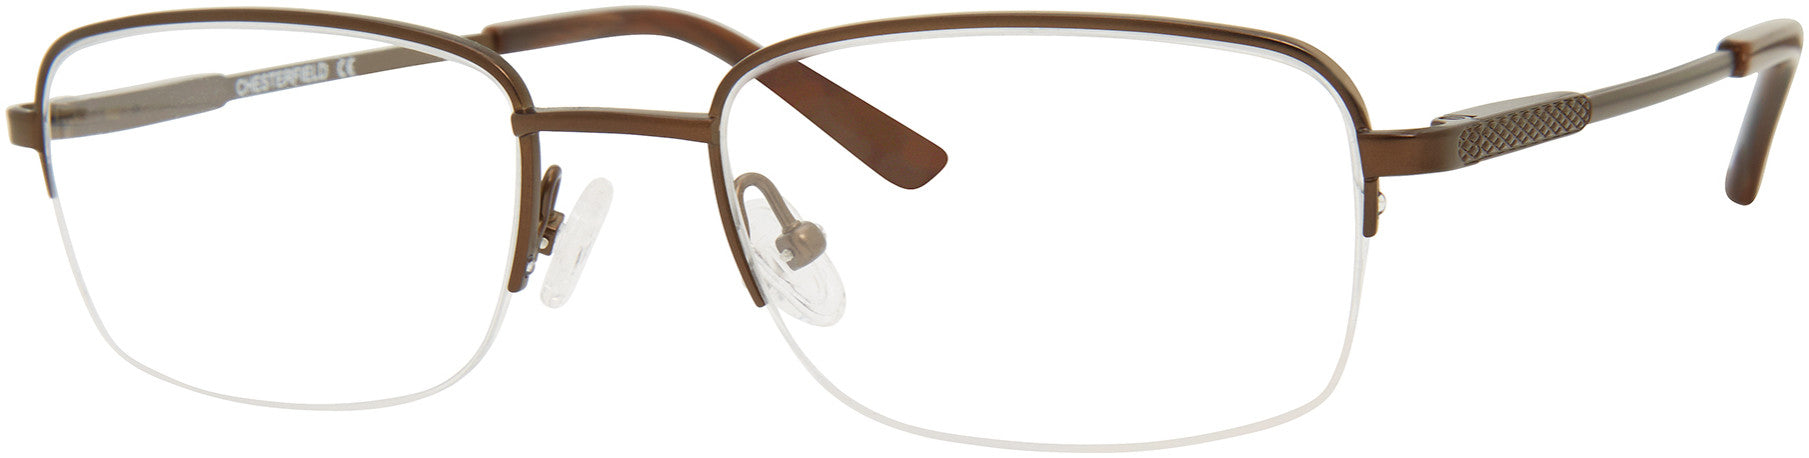  Chesterfield 891/T Rectangular Eyeglasses 0E62-0E62  Brushed Brown Brown (00 Demo Lens)